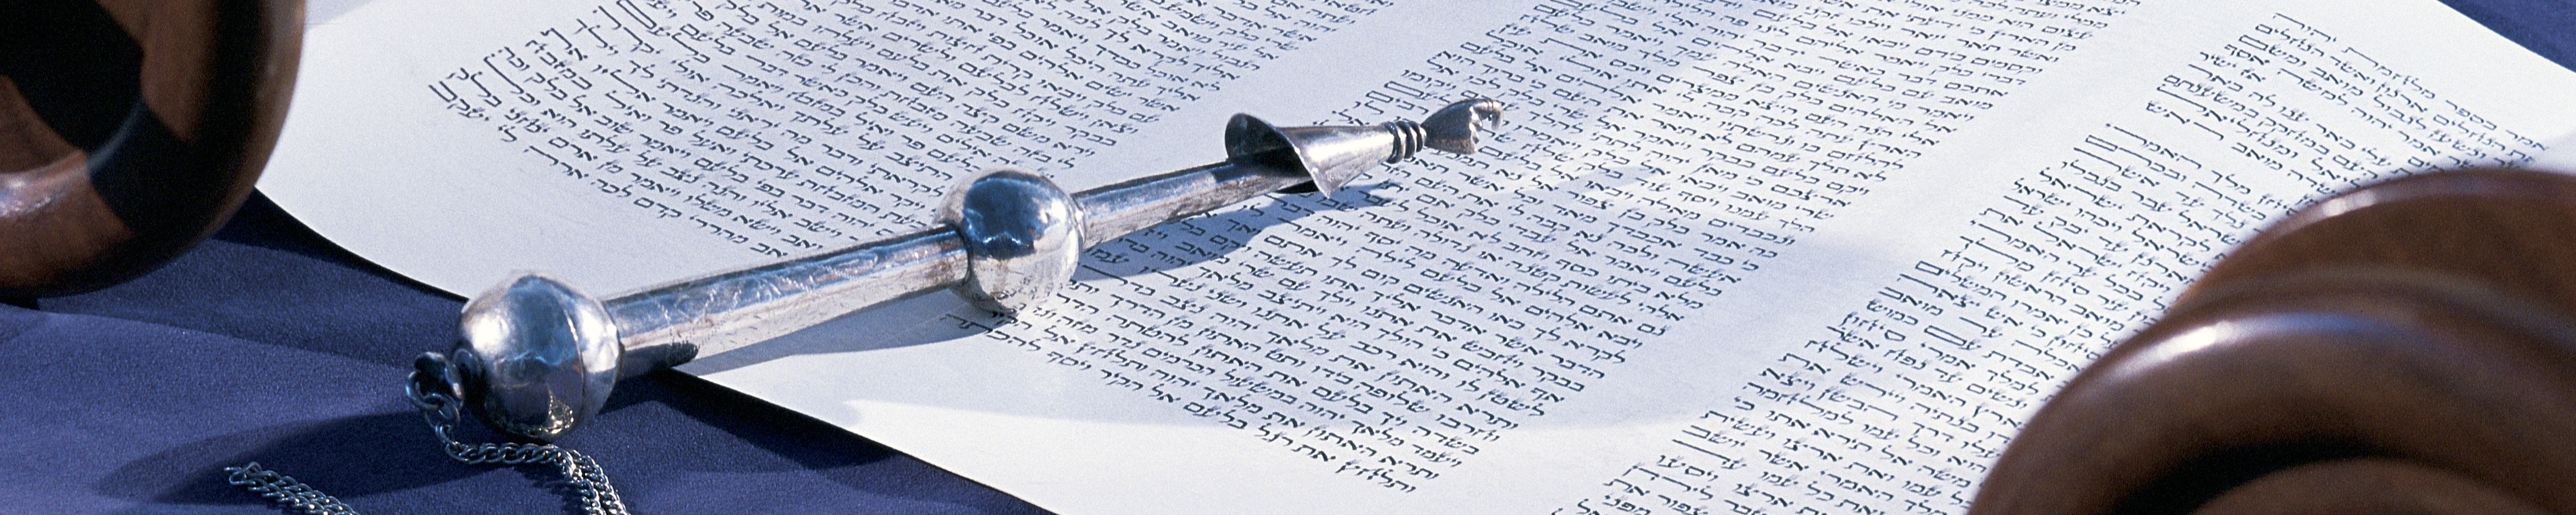 synagogue services essay